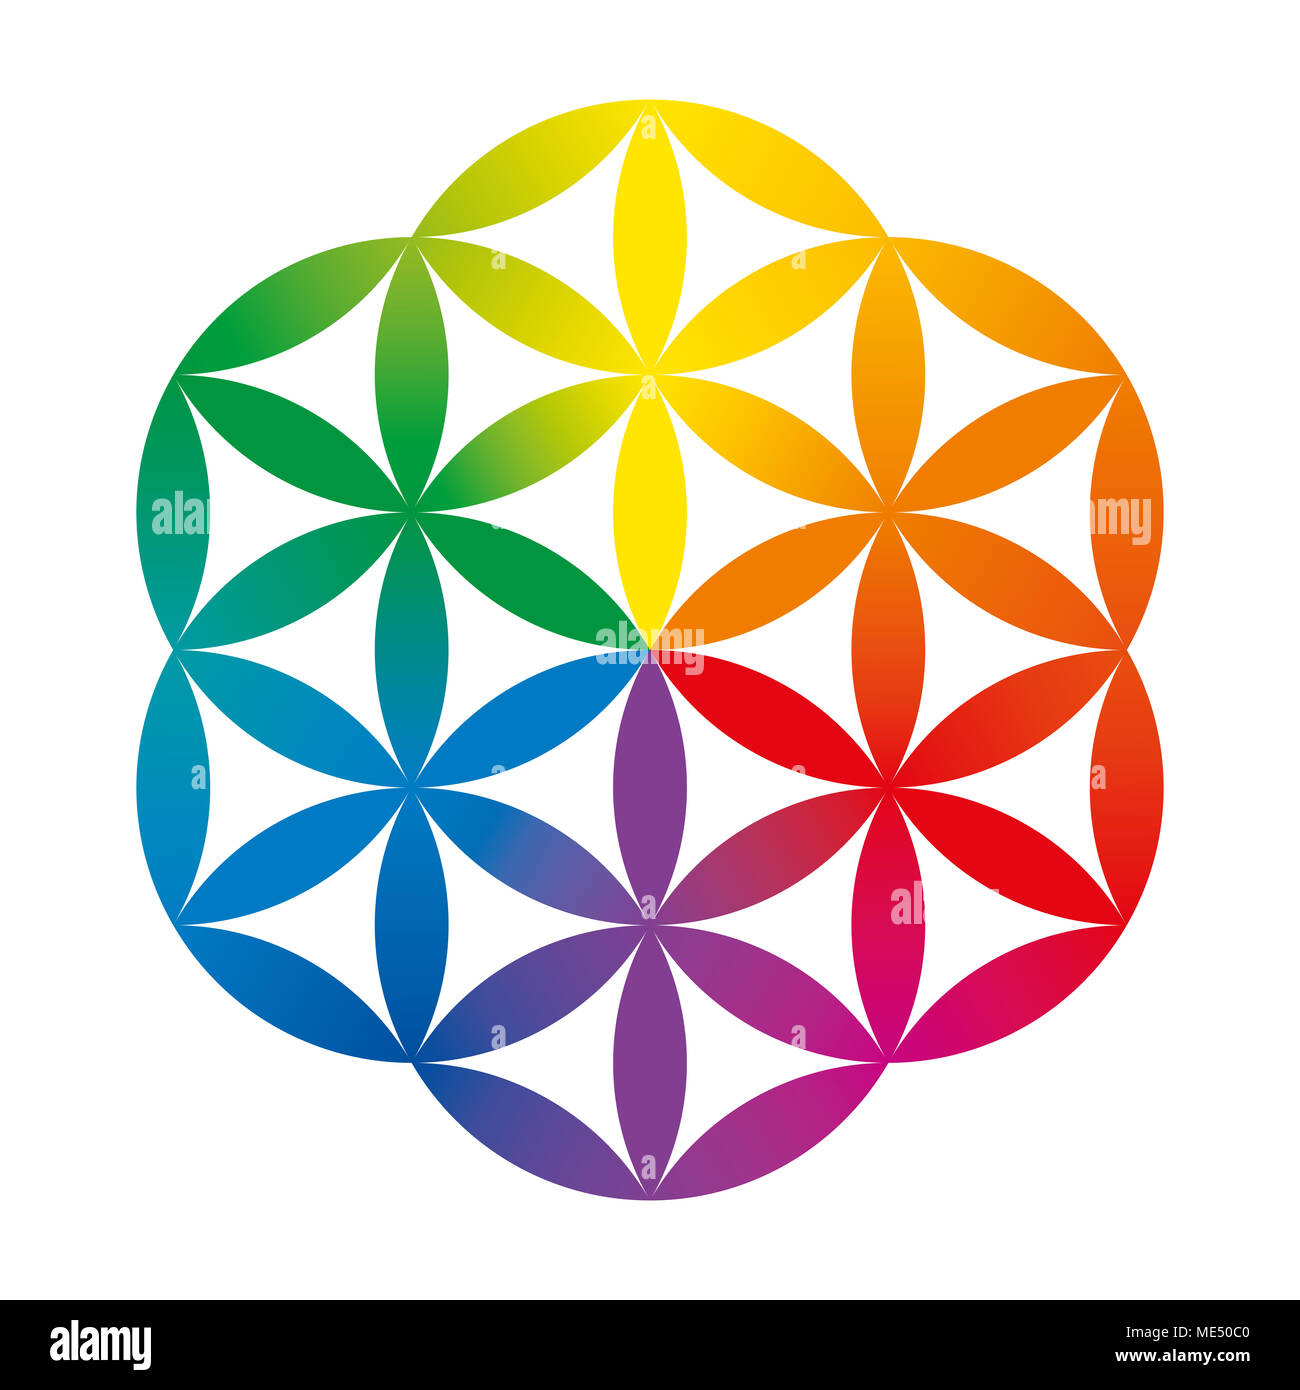 Color arcobaleno la metà di un fiore della vita. Figura geometrica composta da una molteplicità di cerchi sovrapposti formando un fiore come modello. Foto Stock